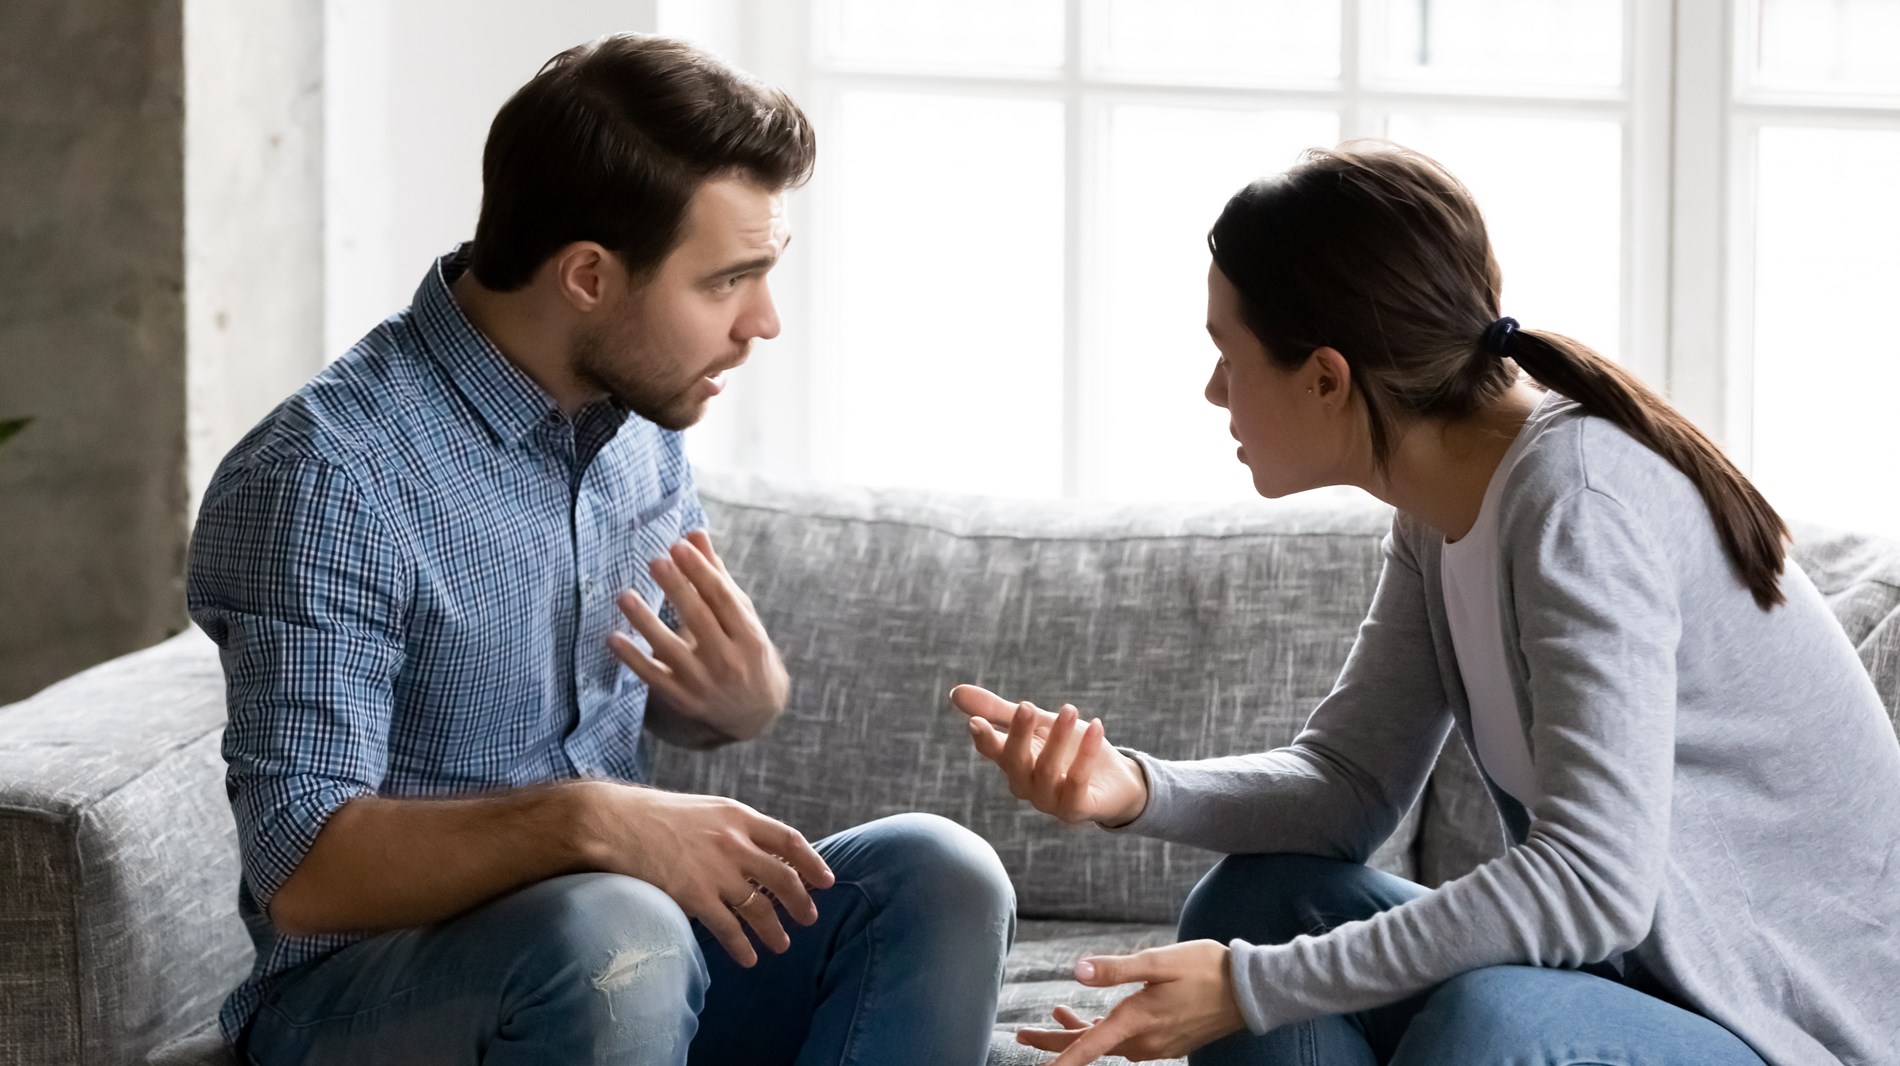 كيف تتجنبين اللوم عند مناقشة مشكلة مع زوجكِ؟
